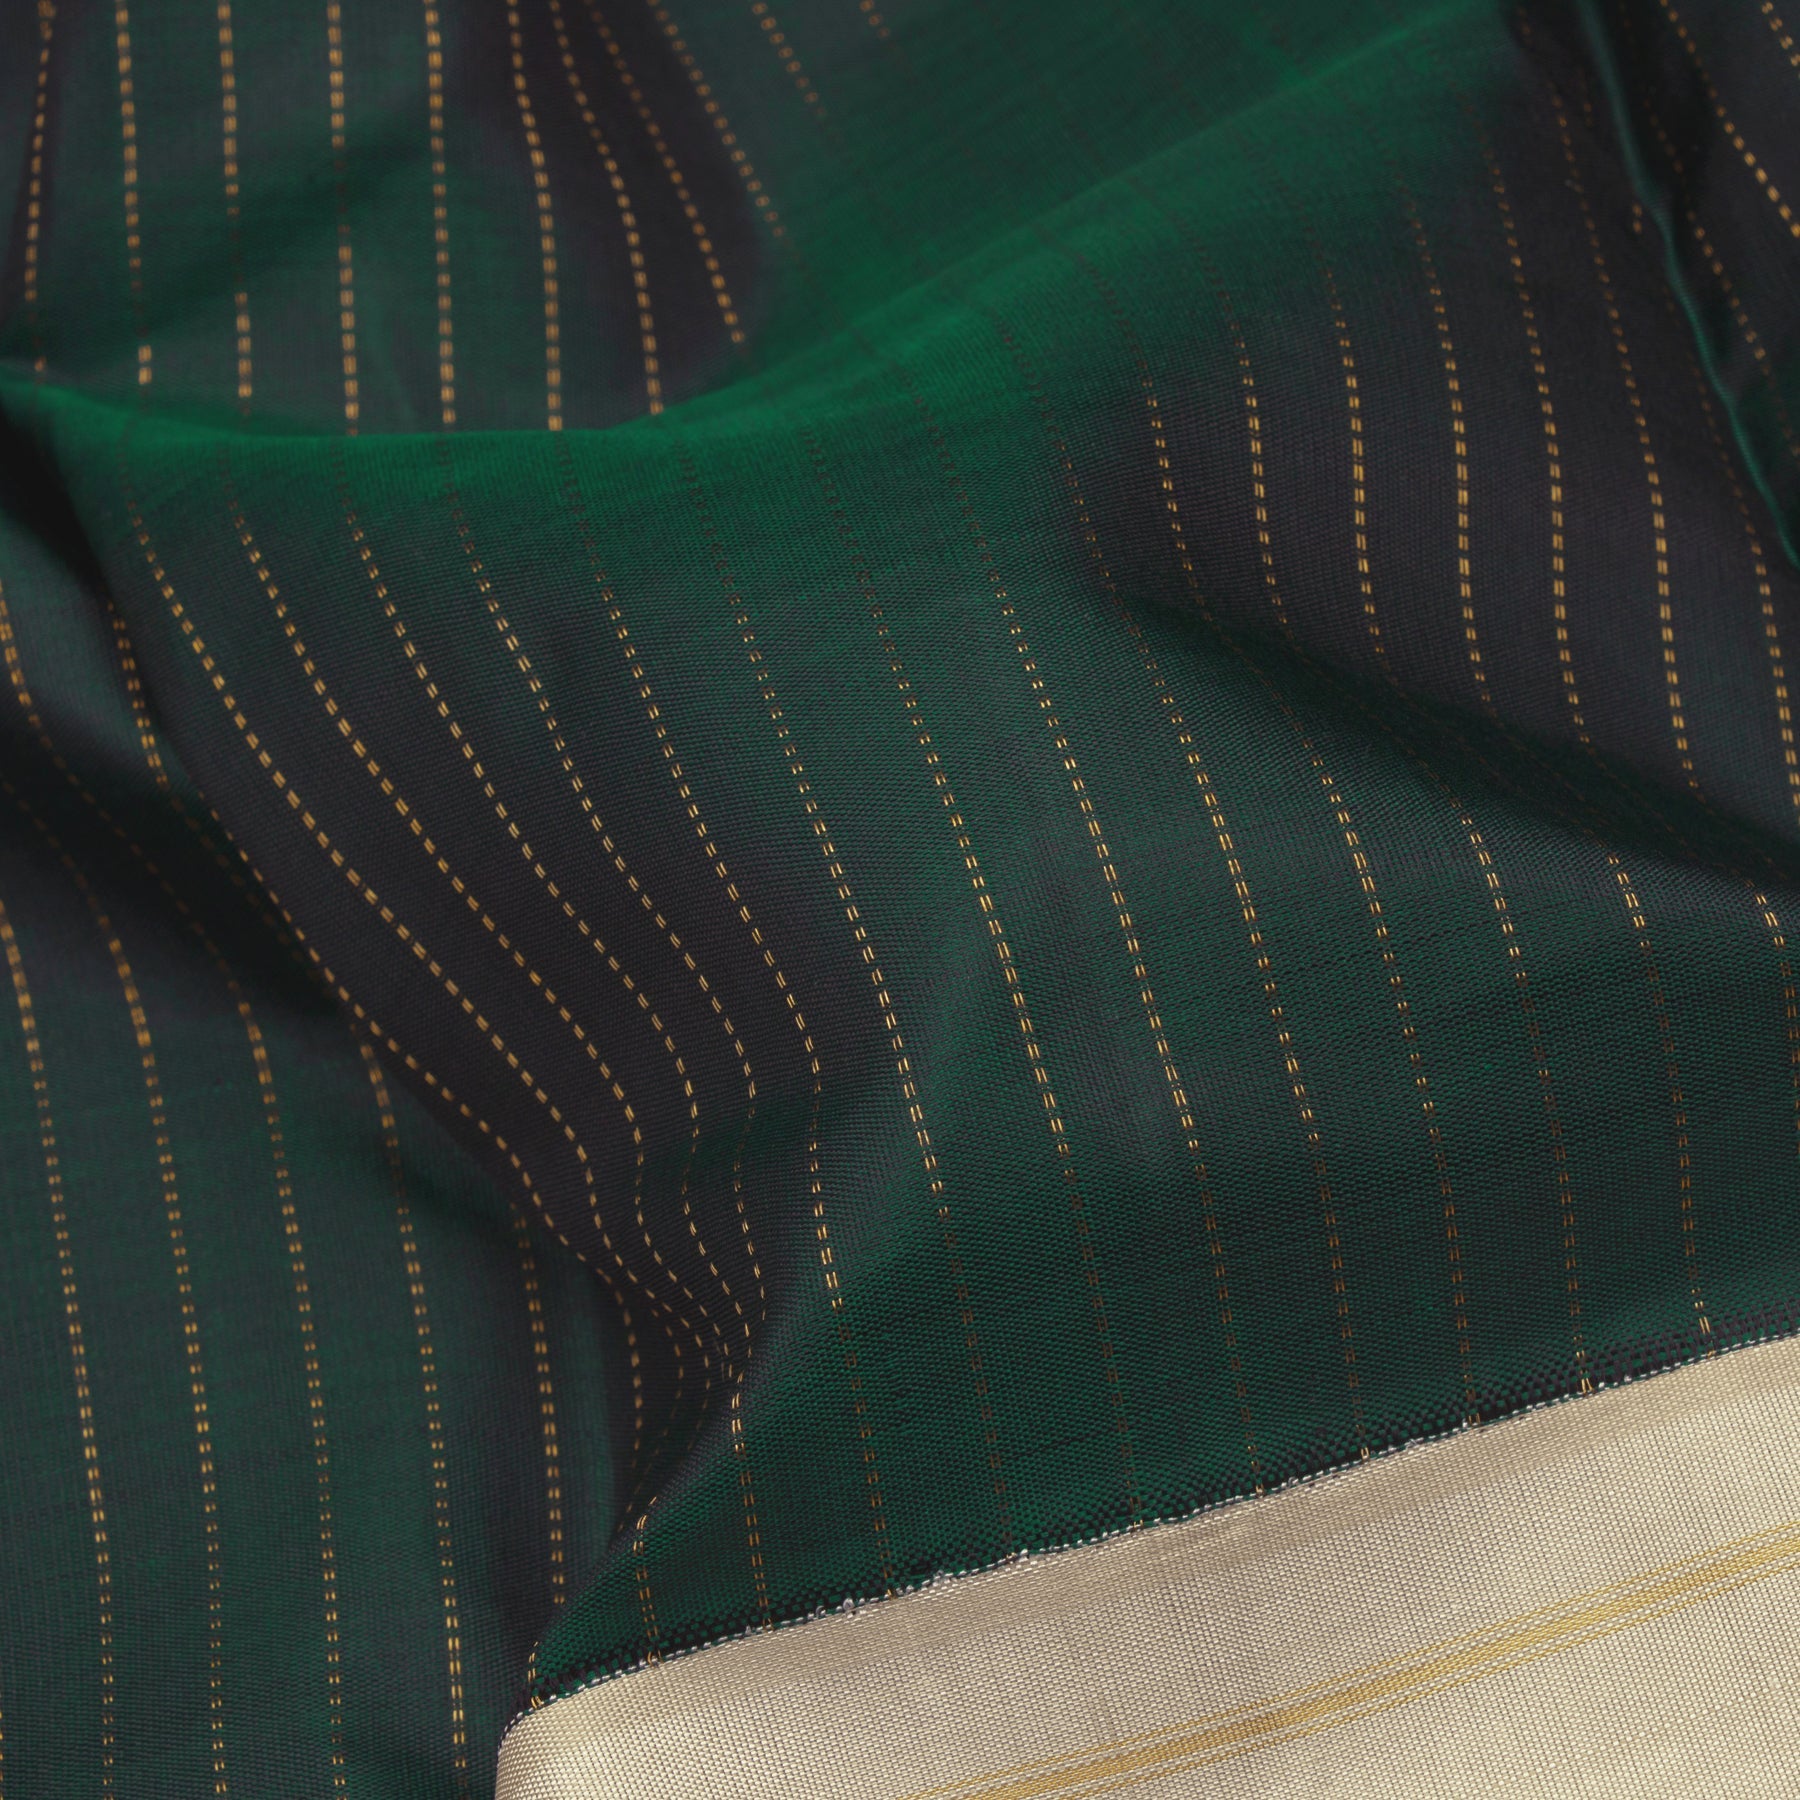 Kanakavalli Kanjivaram Silk Sari 23-599-HS001-11257 - Fabric View